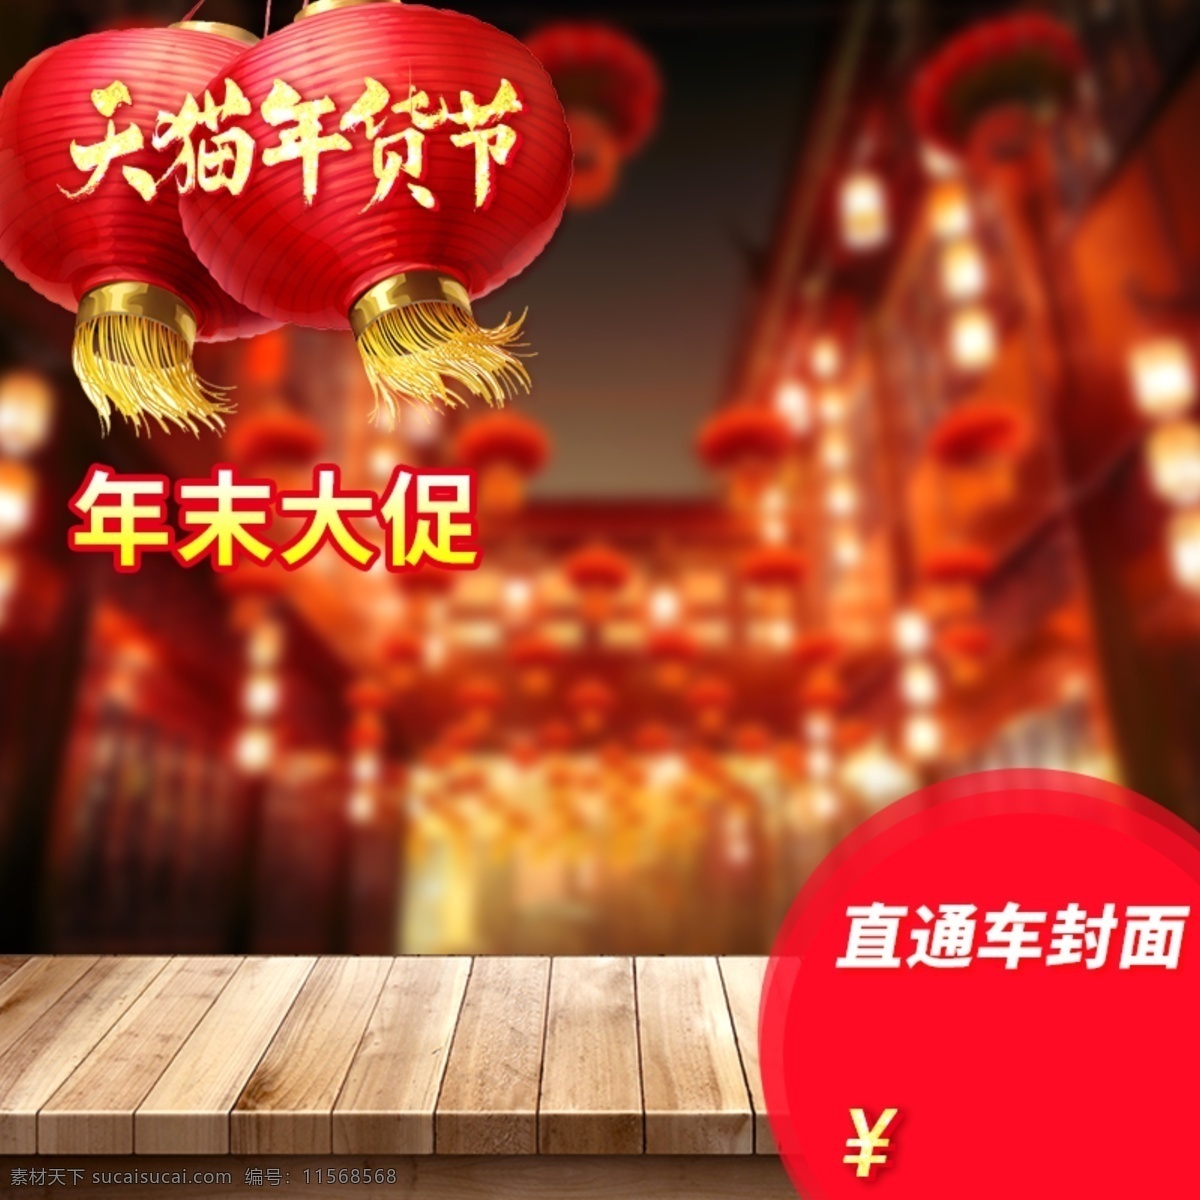 天猫 春节 年货 封面 背景 过年 灯笼 淘宝